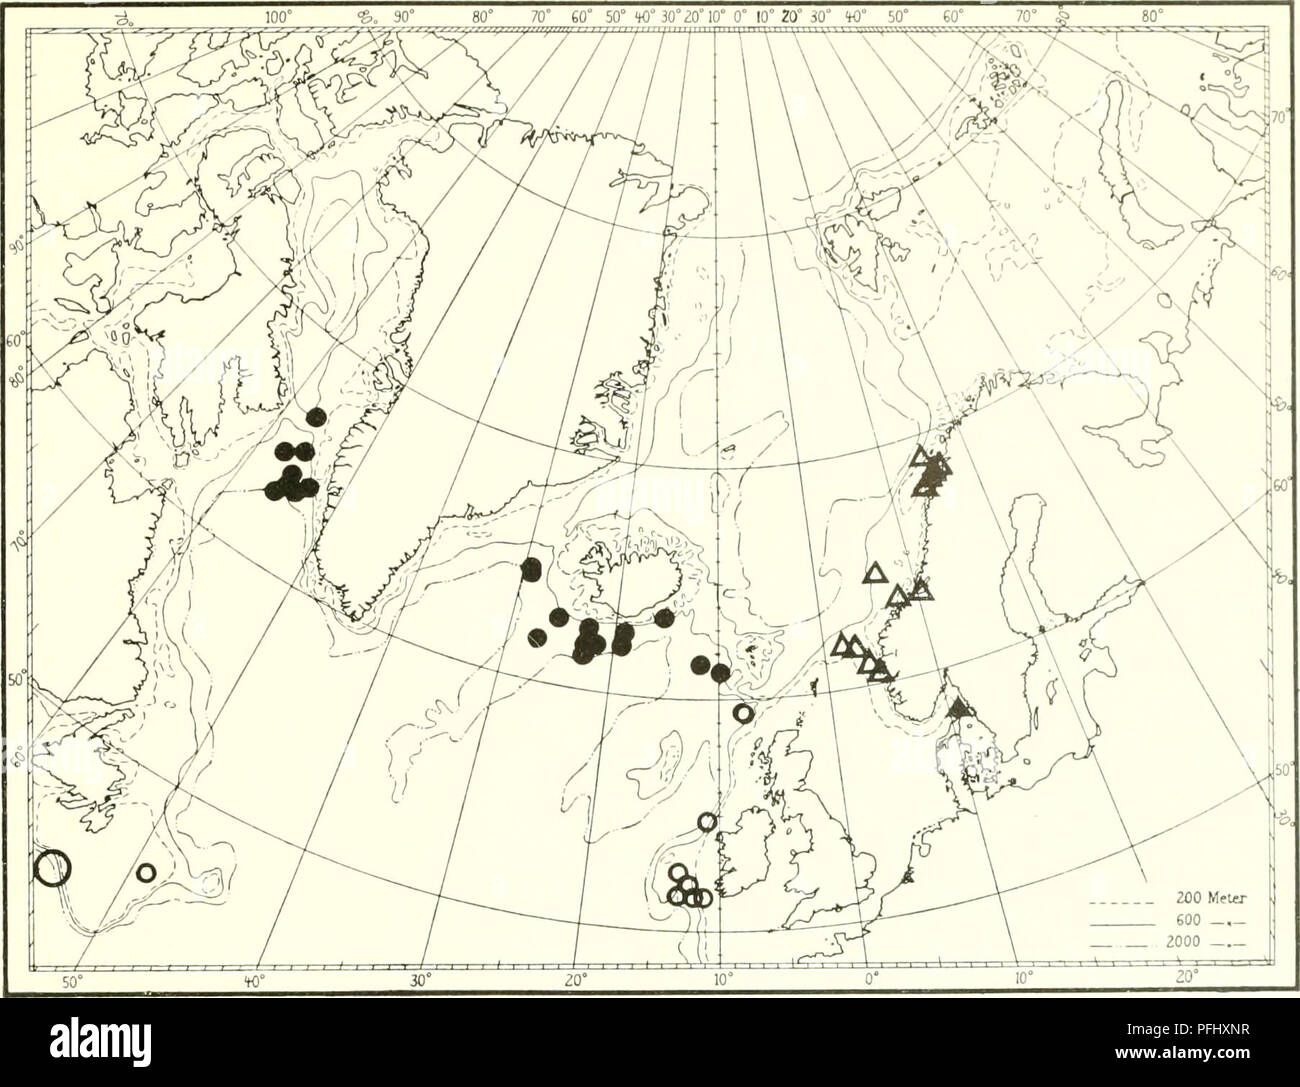 . L'Ingolf danois-expédition. Les animaux marins -- les régions de l'Arctique ; les expéditions scientifiques ; les régions de l'Arctique. Ot'TOC'ORALLIA. Fig. 53. Â ¢'Actnu irhusciihi (UC (.lolinsnn). Un Isidi'lhi ]()jok&gt;ixU M. ISC. 02Â°4O' N 22°17' O. 1109)11, 39('. "Innolf St. (i9. reg N. 27'00' O. 913m, 6Â°1 C. - Si. 62Â°58' N 25°24' O. 1192 m, 4Â°8C. Â - S4. 64Â°45' N. 29Â°0()' O. 1070 m, 4Â°4C. Â - 90. 6r08' N. 9Â°4B' O. 847 m, -'Mirhapl" SRAS 79 St.. 64Â°05' N. 55Â°20' O. 1100 m, '-Tialfi'" Saint 337. 64Â°40' N. 56Â°37' O. 750 m, â - 402. 63Â°54' N. 53Â°15' O. 98,S m, â - 428. 63Â°54' N. 53Â° 15' Banque D'Images